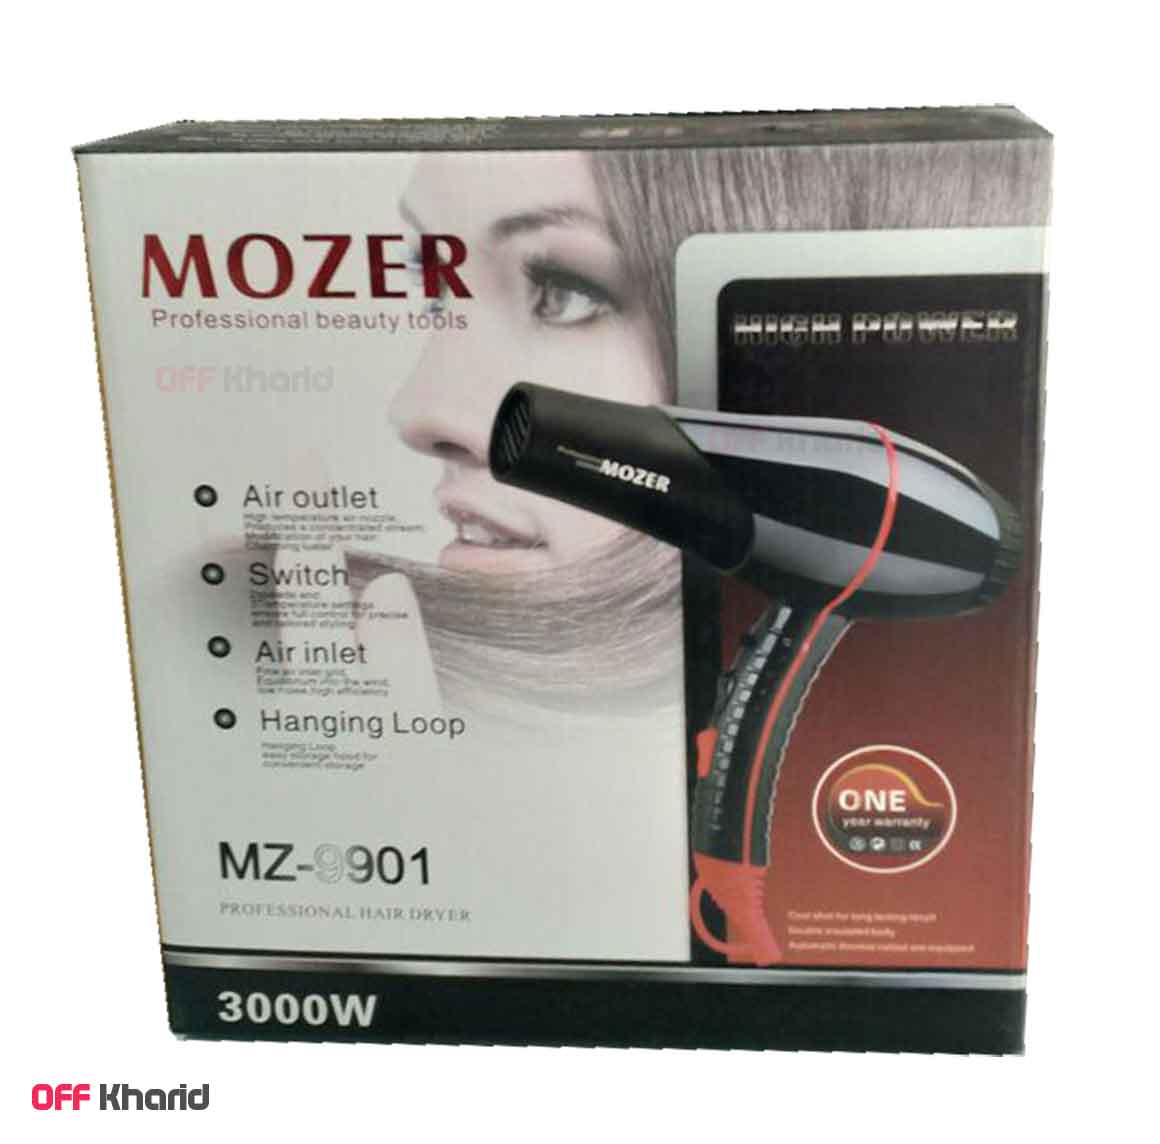 سشوار موزر مدل MOZER MZ-9901